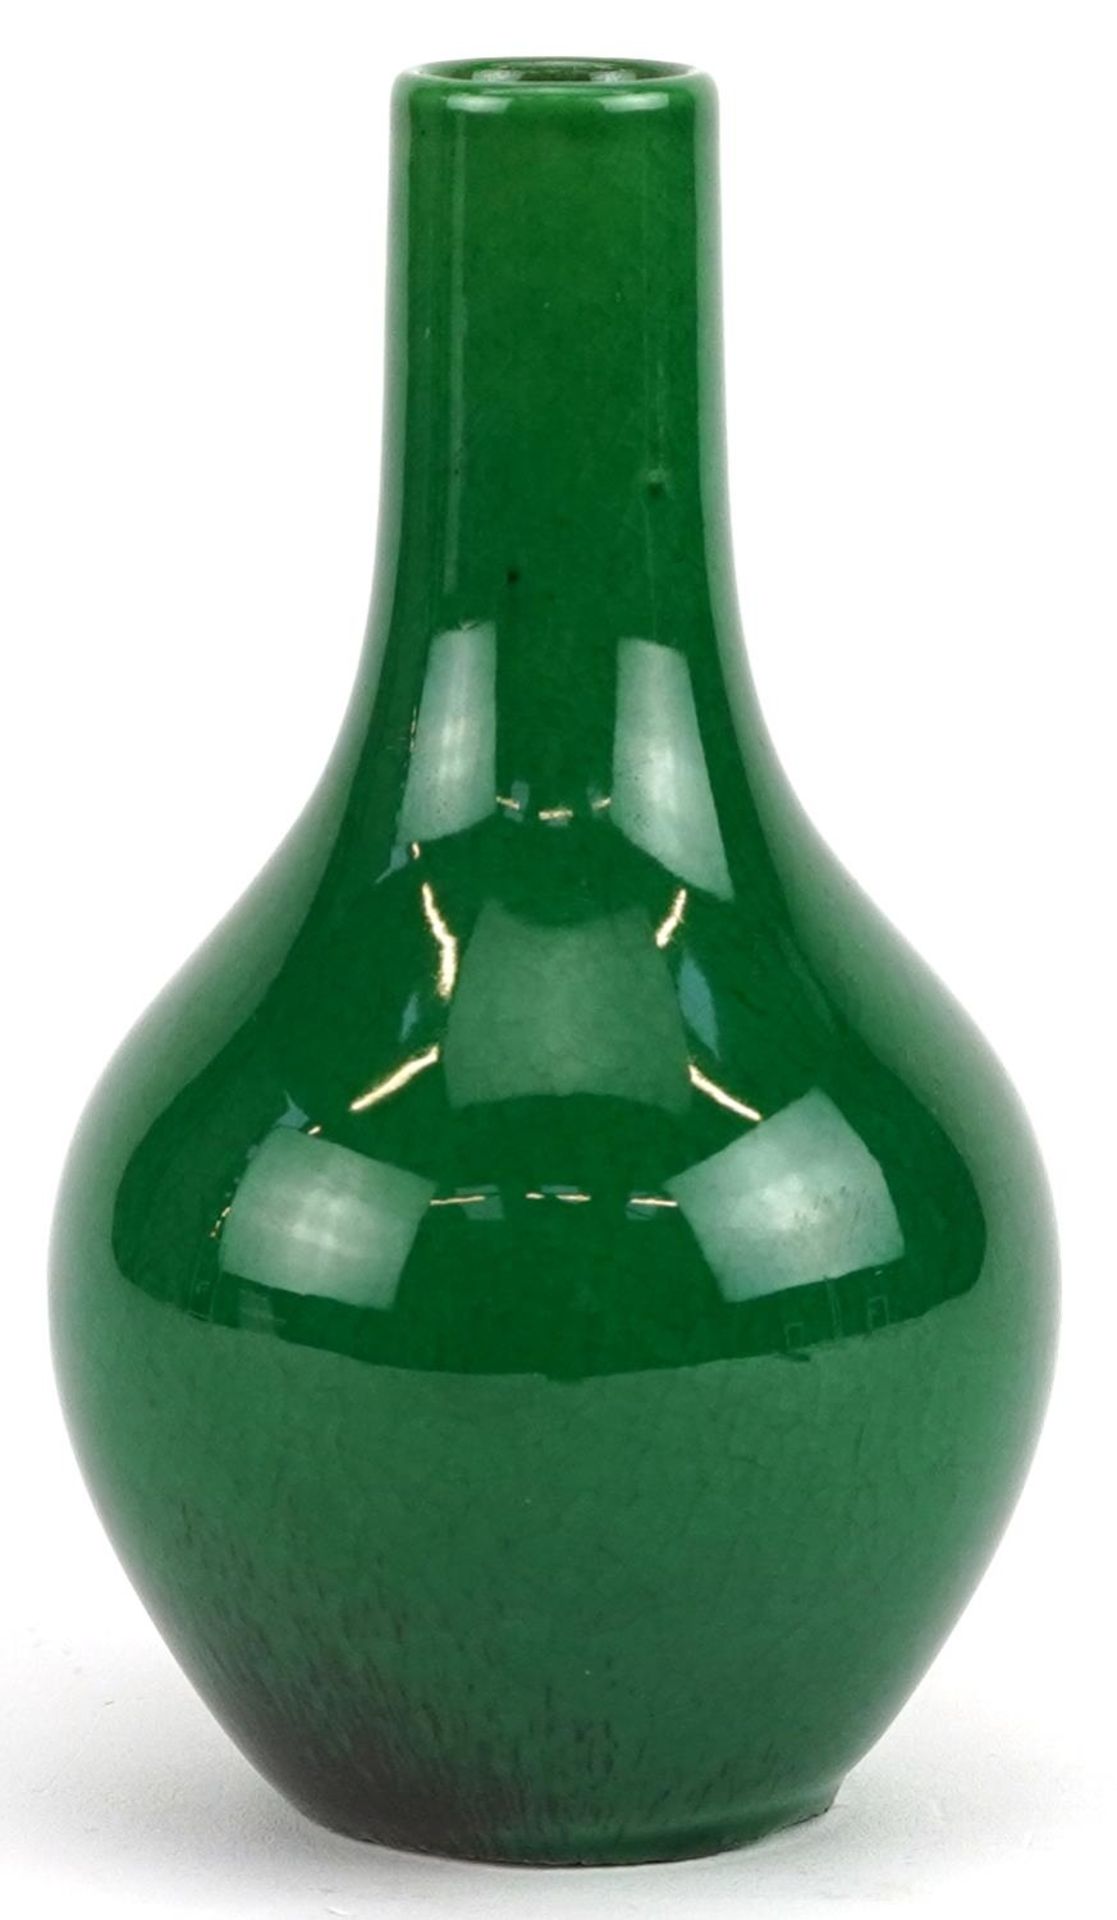 Chinese porcelain vase having a green crackle glaze, 12cm high